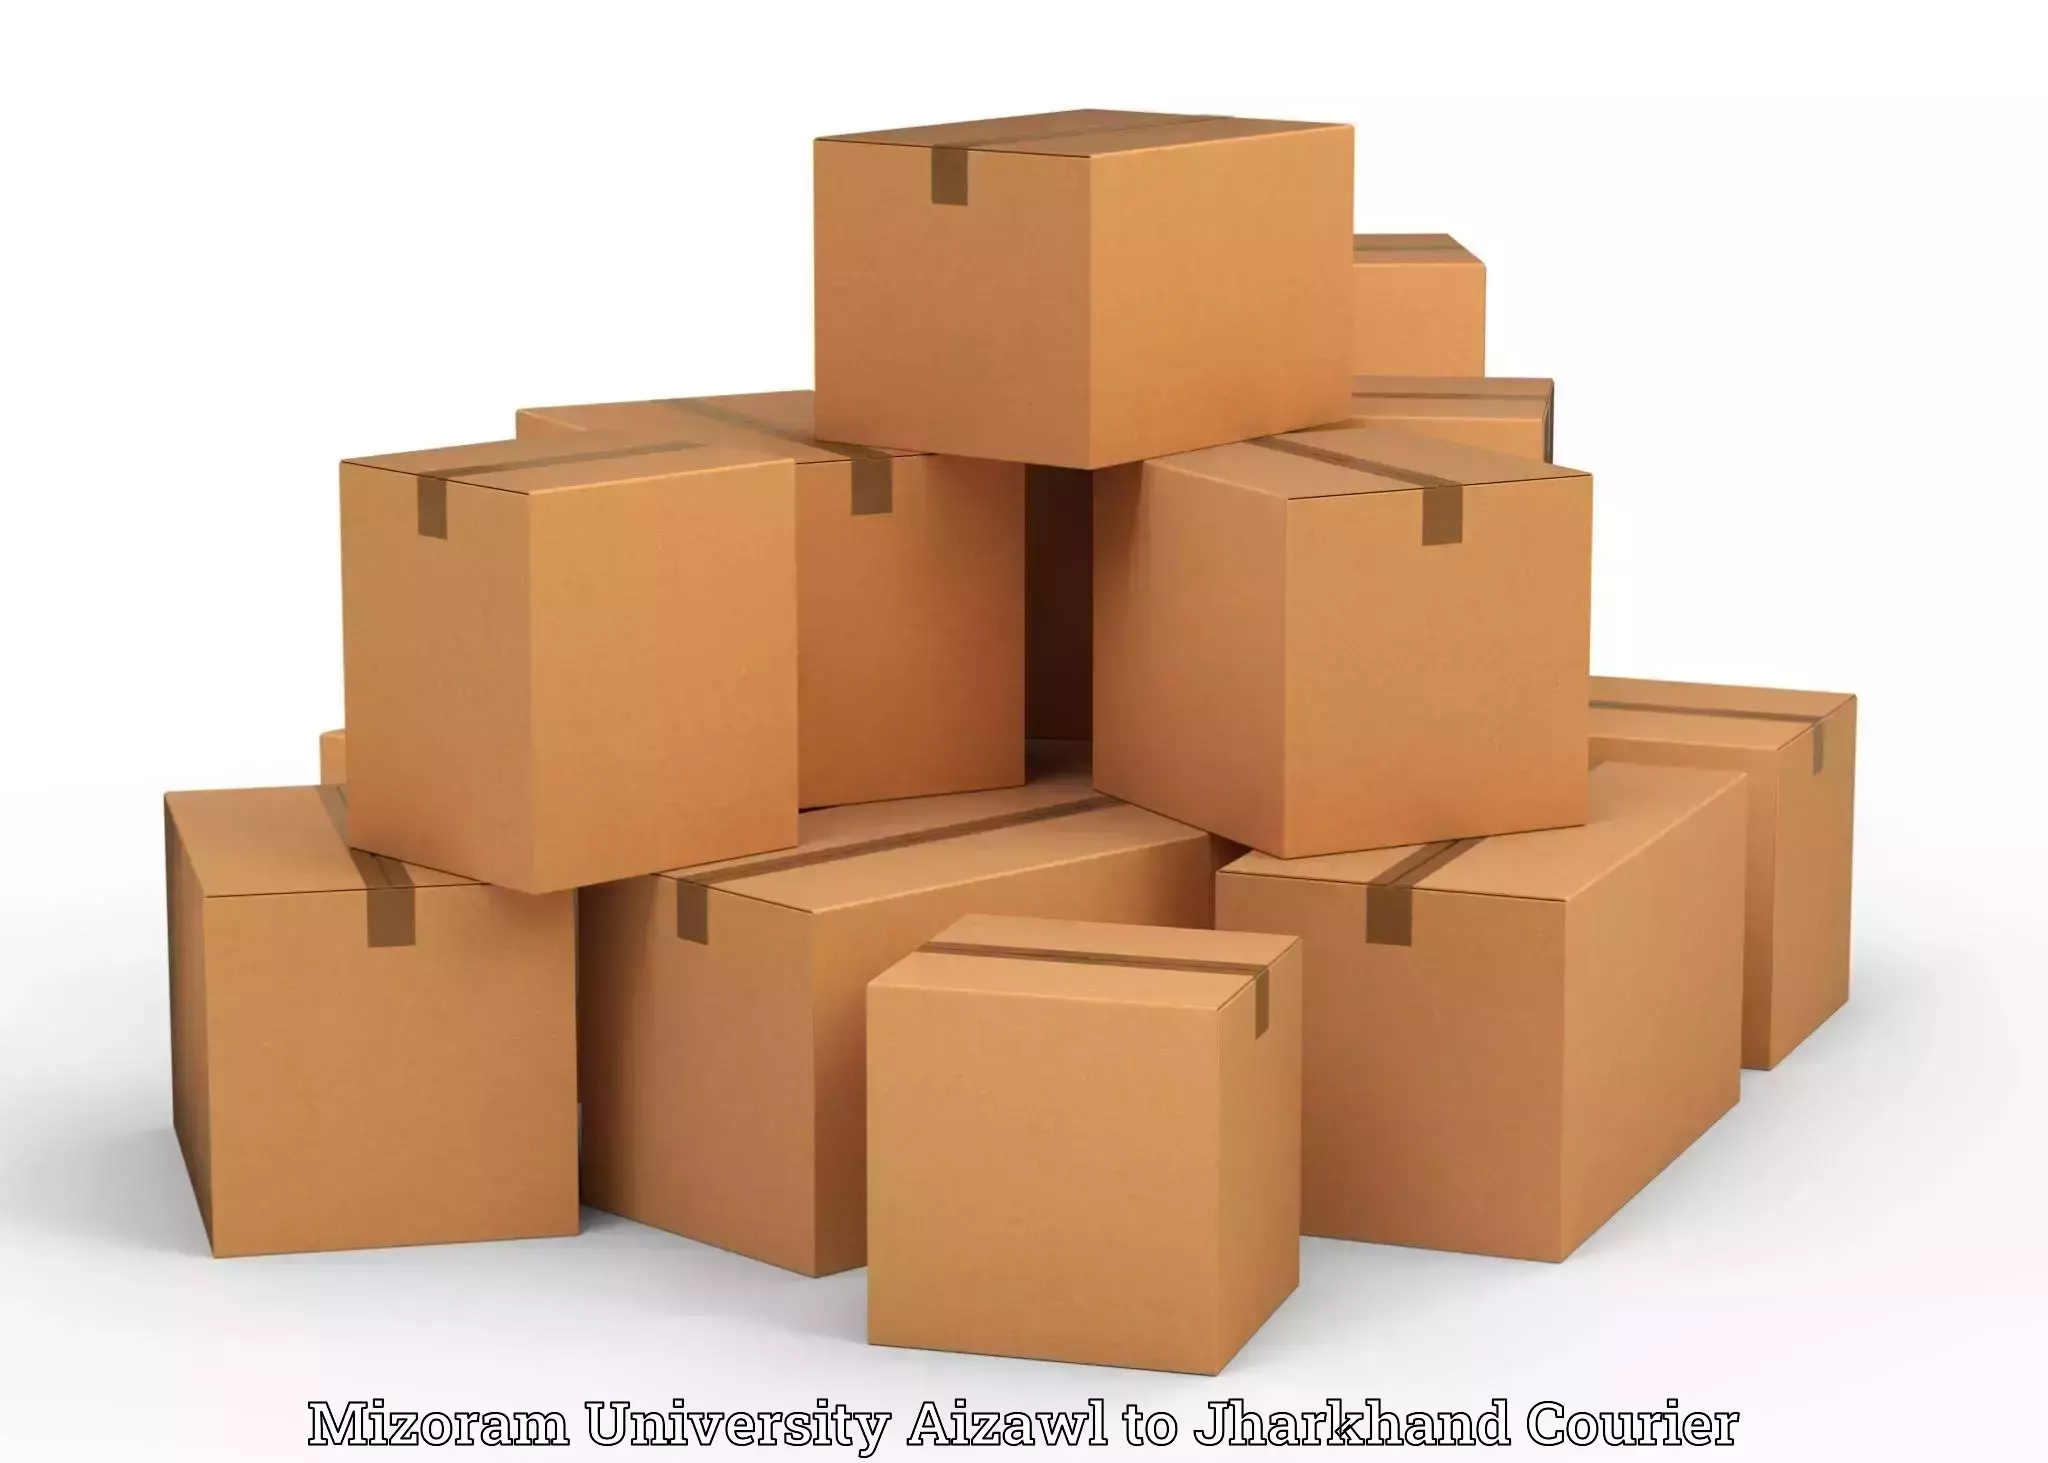 Household goods movers and packers in Mizoram University Aizawl to Dhalbhumgarh